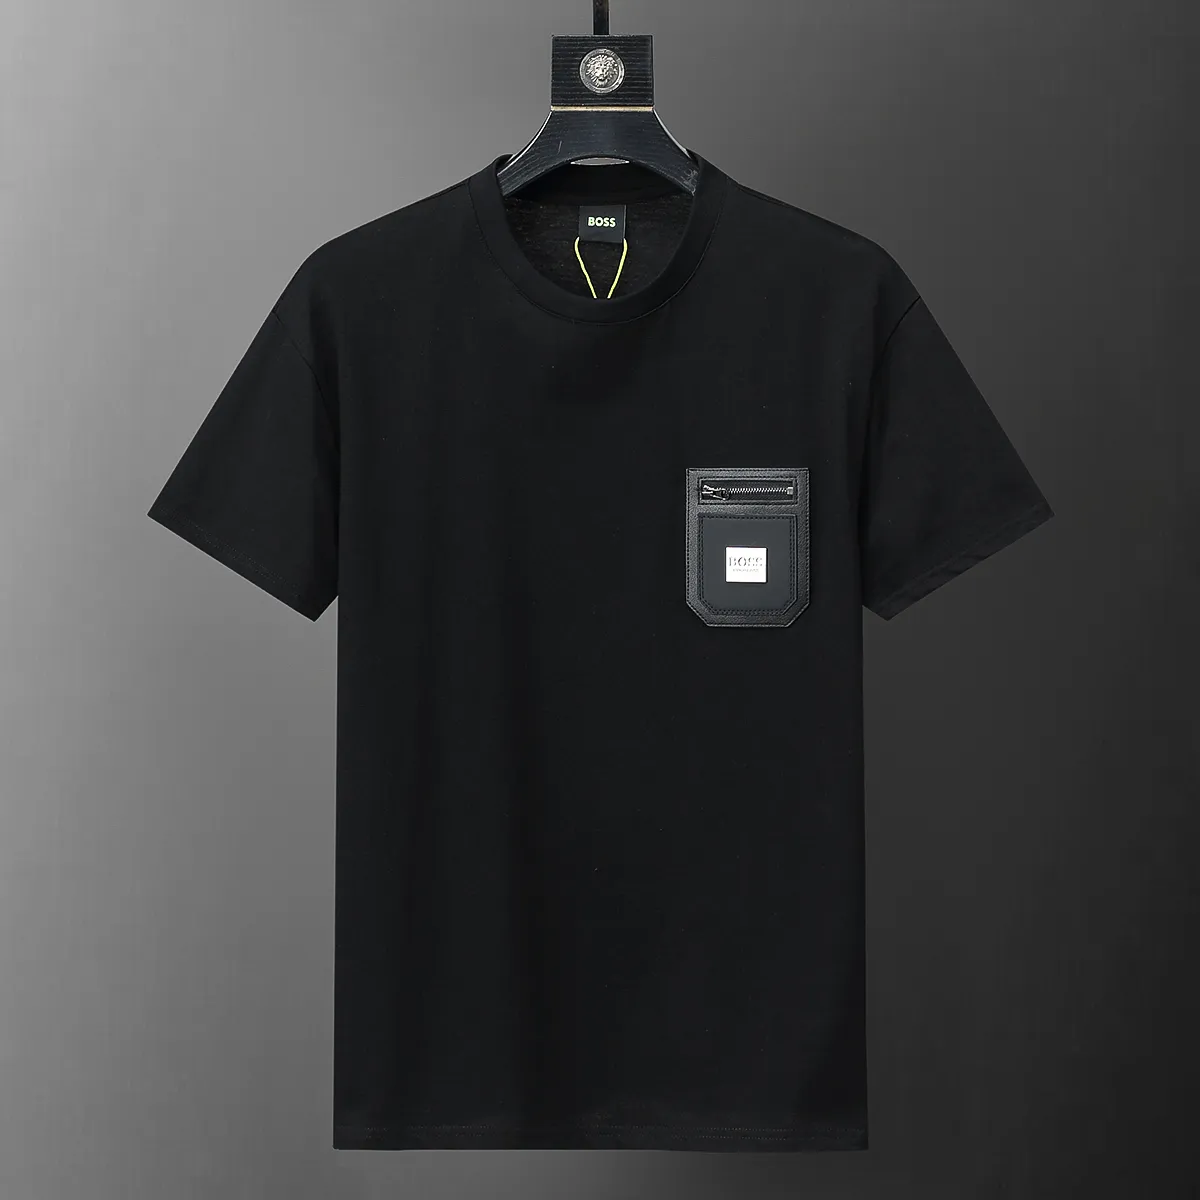 SS24 Summer 31042 B 새로운 패션 브랜드 남자 티셔츠 짧은 맞춤 슬림 캐주얼 데저저면 100% 대형 M-3XL